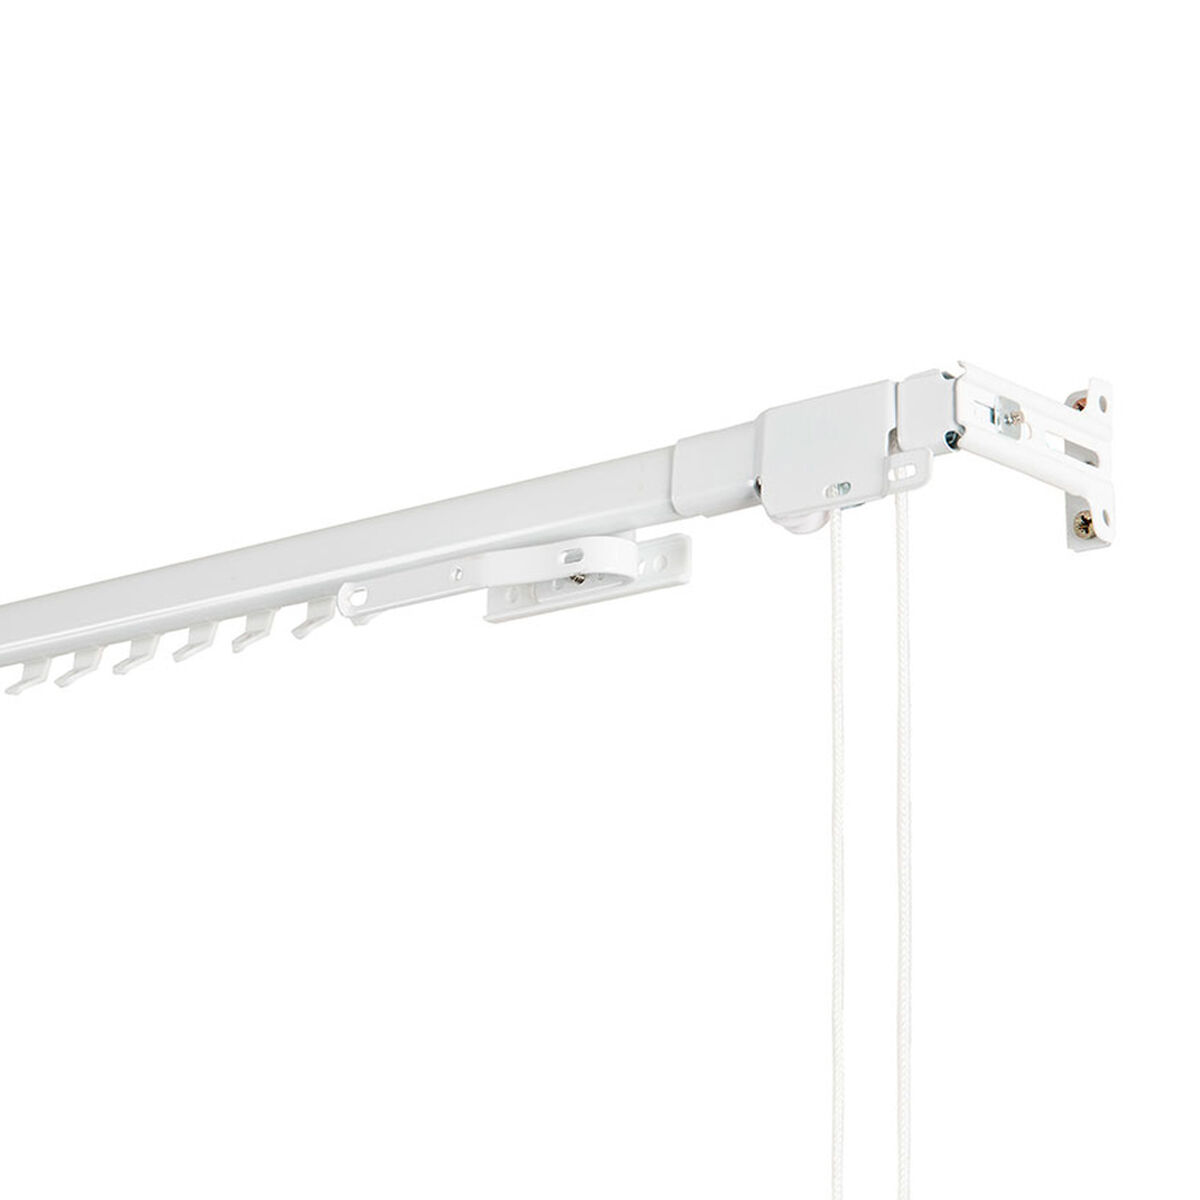 Curtain Rails Stor Planet Cintacor Extendable Reinforced White 70-120 cm